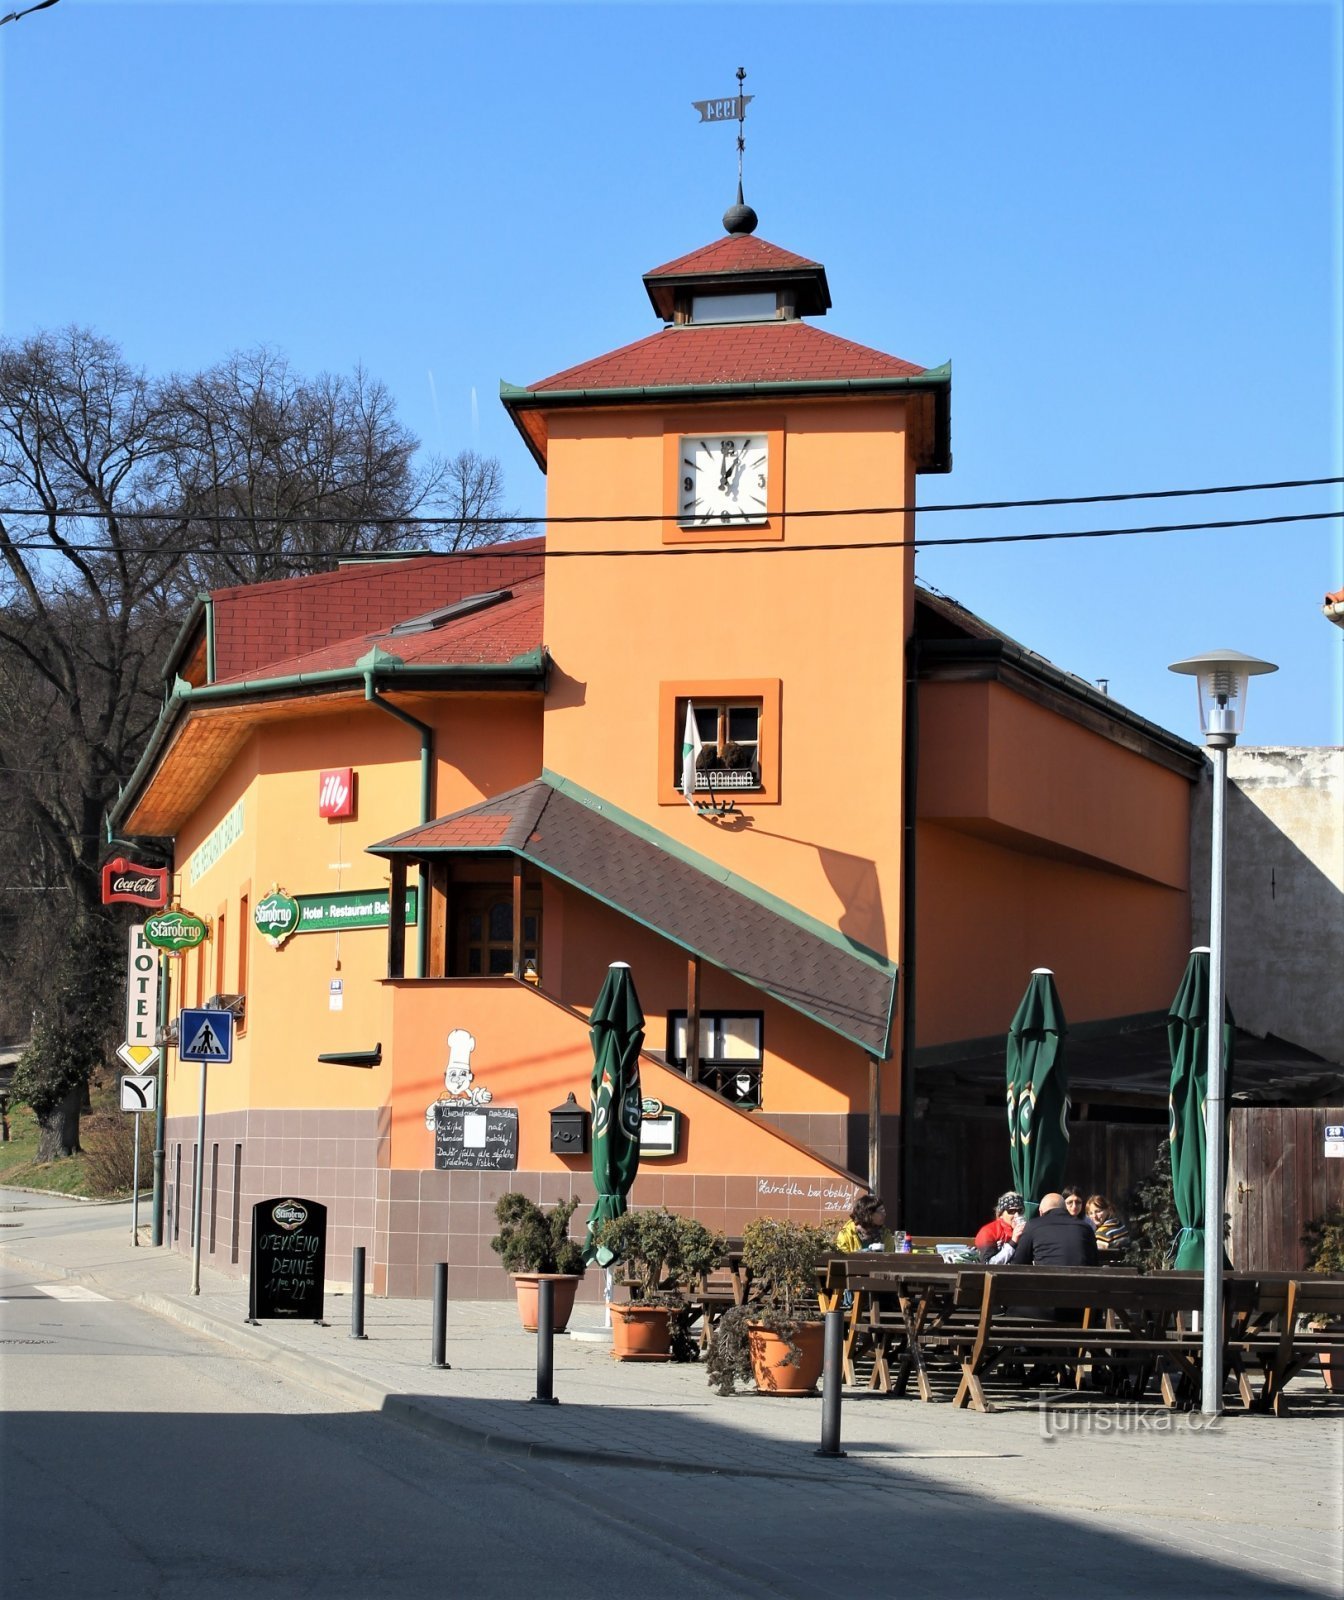 Chuyến đi bộ bắt đầu từ làng Lelekovice gần khách sạn Babí lom